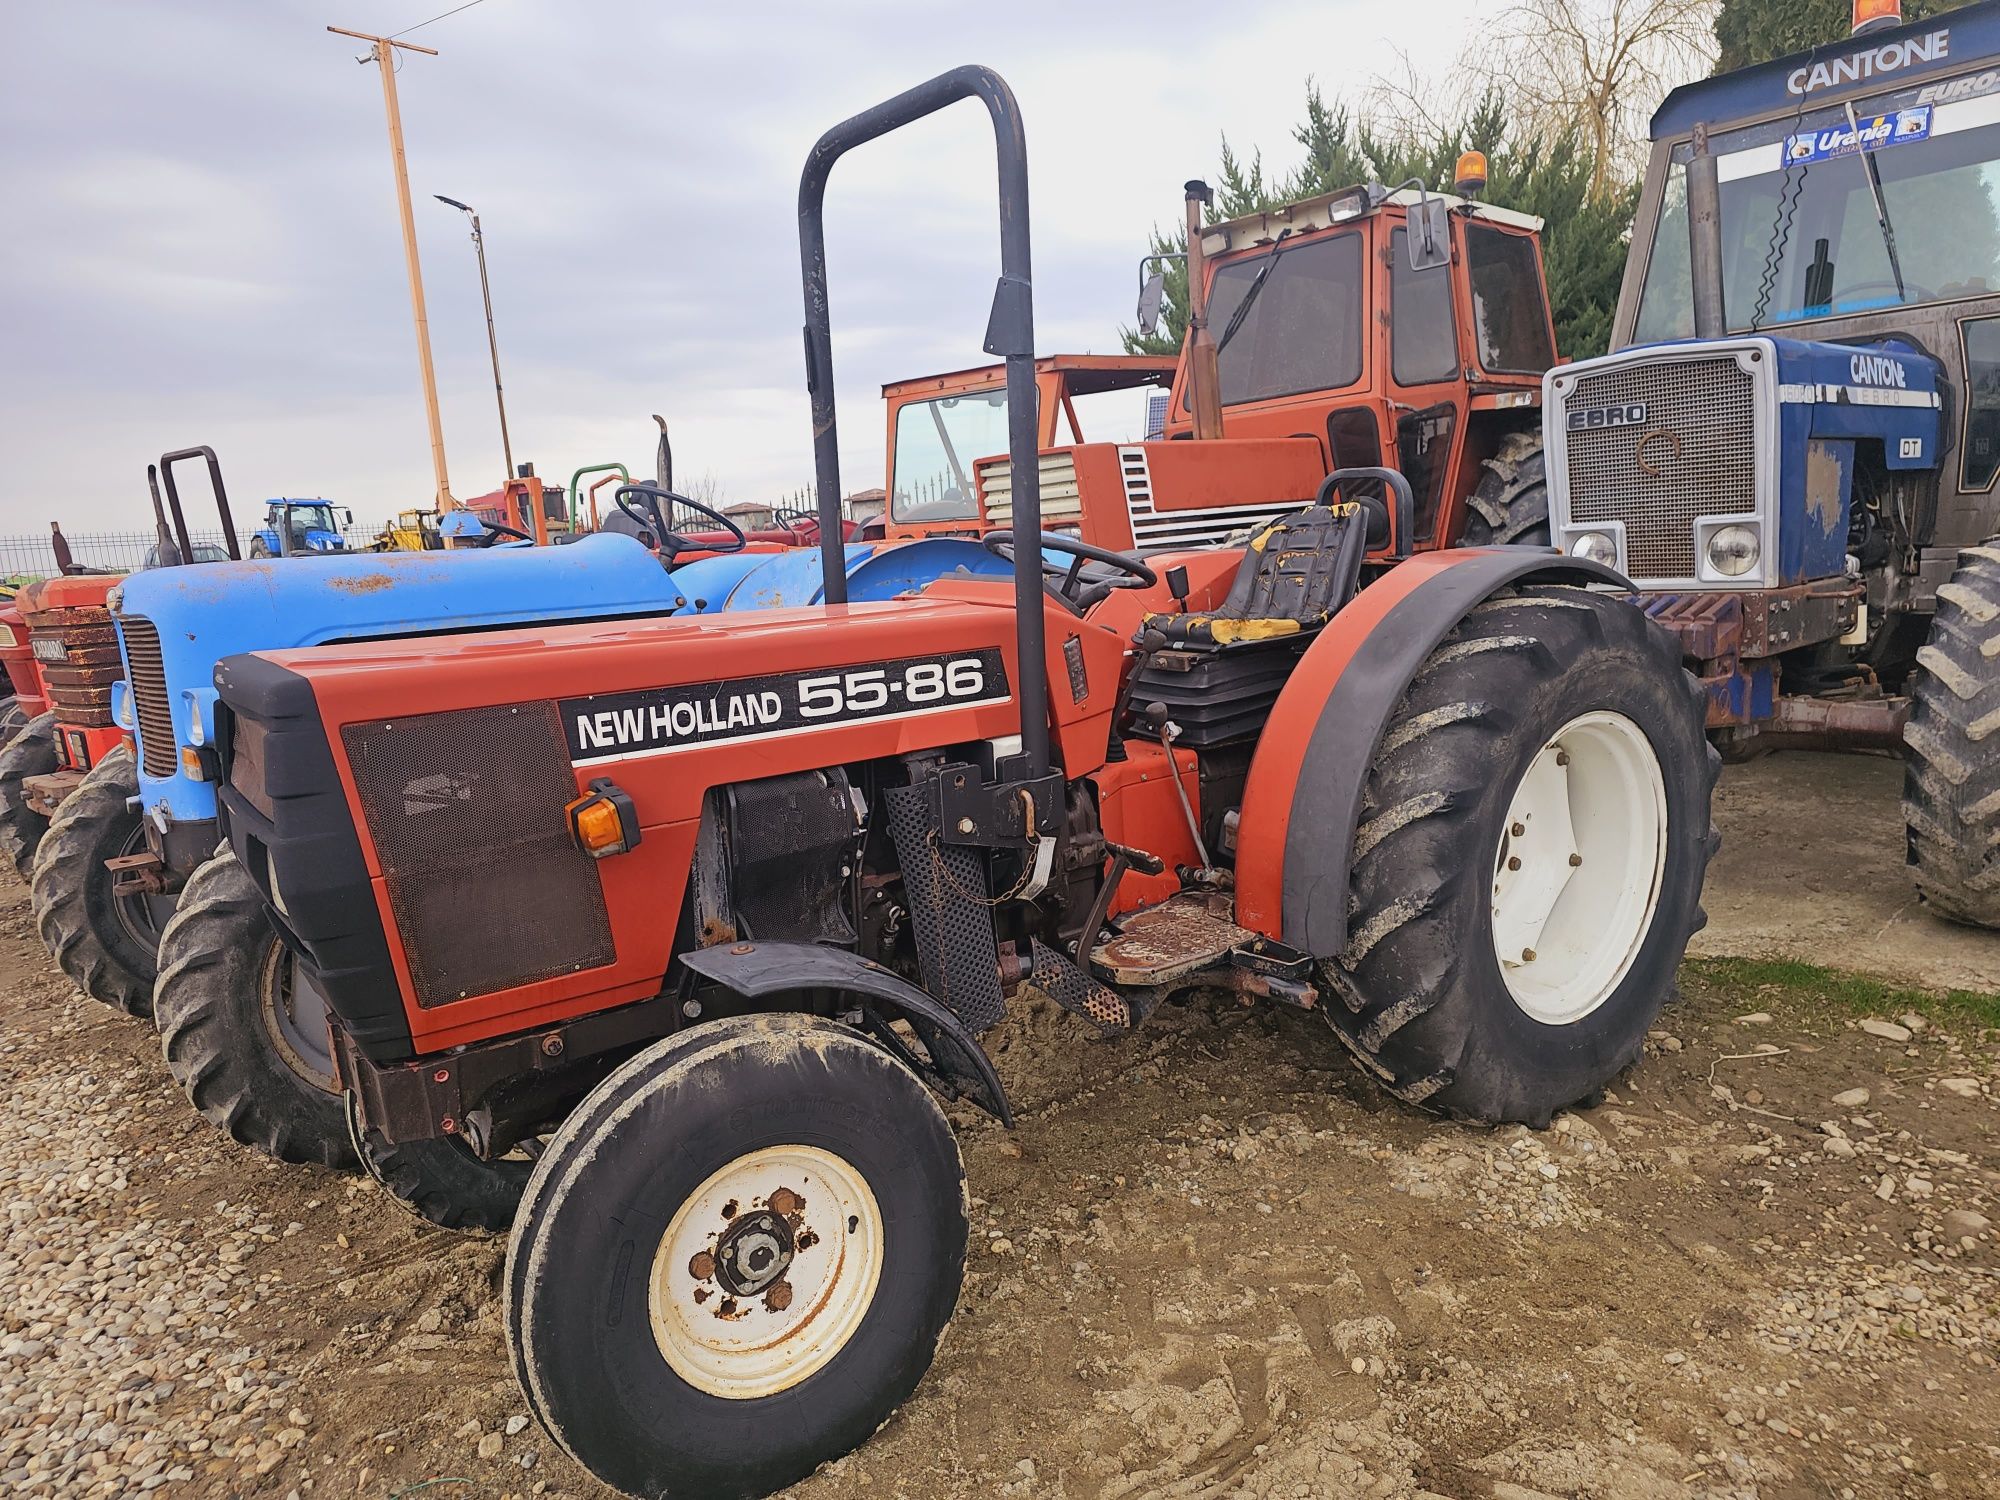 Tractor New Holland 55-86 Viticol Import Italia ‼️